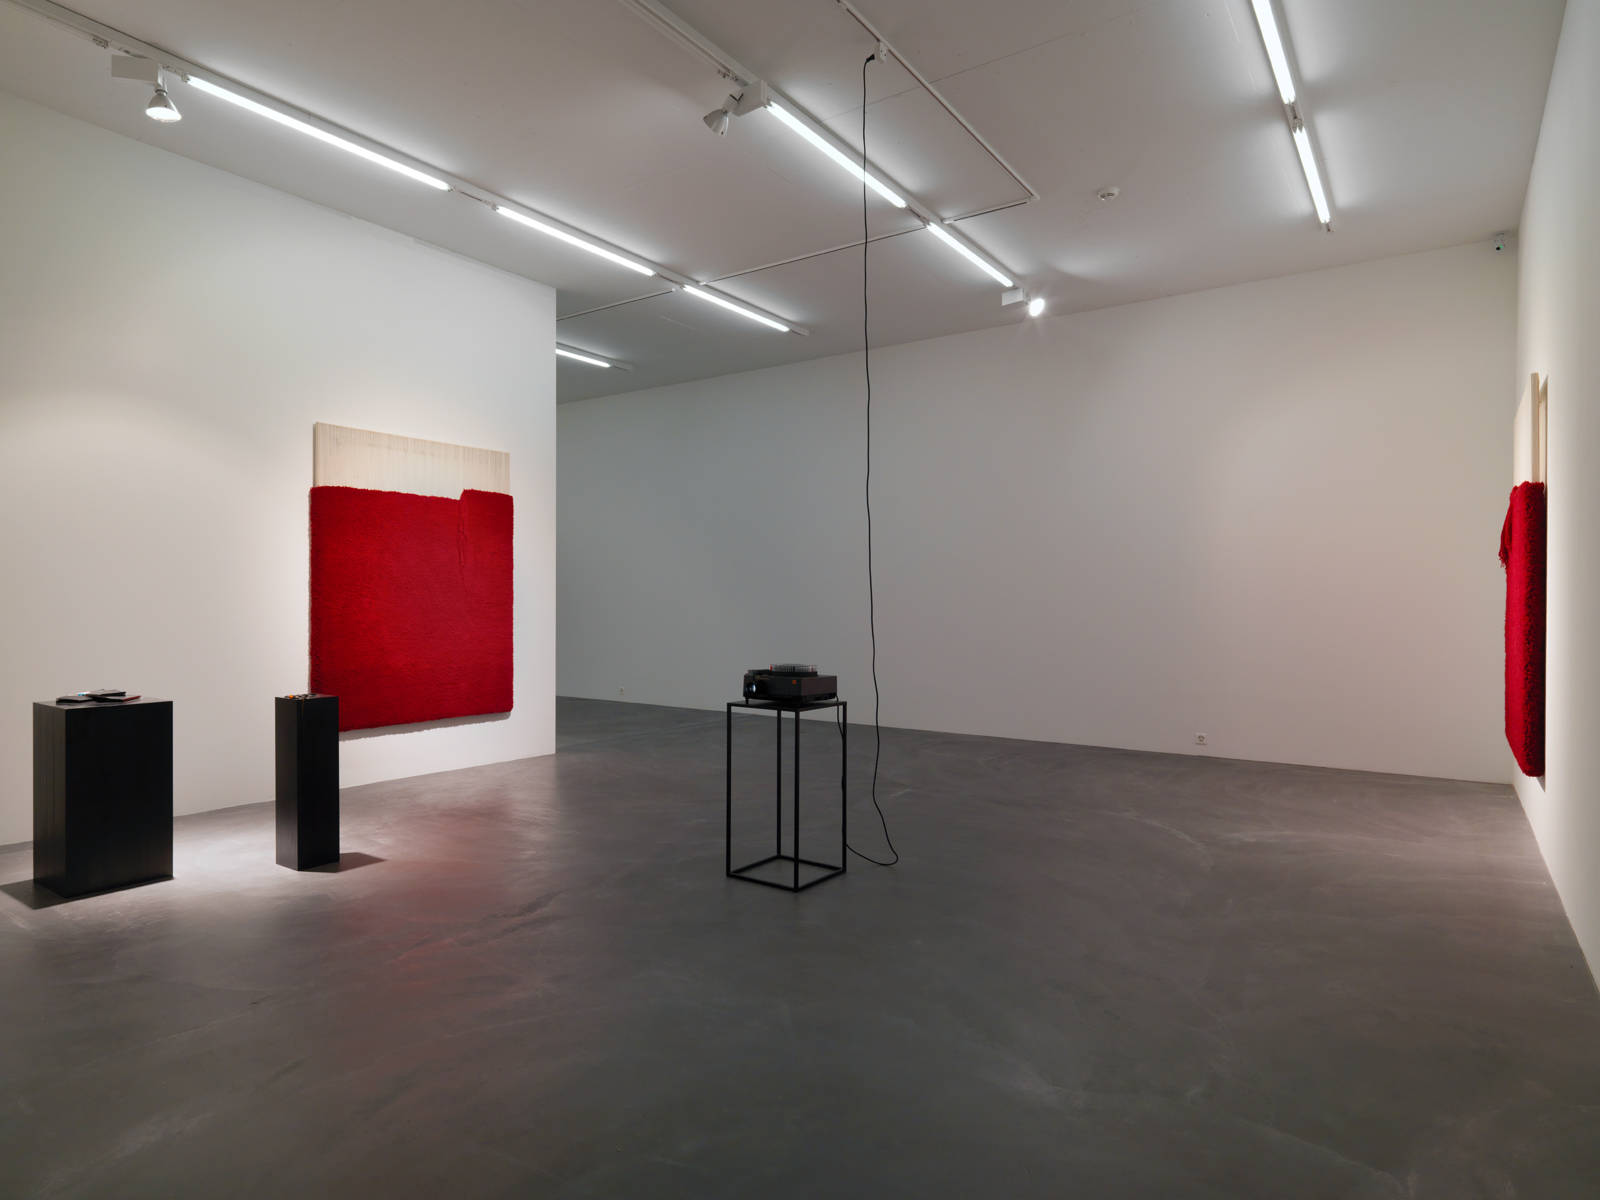 Latifa Echakhch / Exhibition view, Galerie Eva Presenhuber, Zürich / 2016